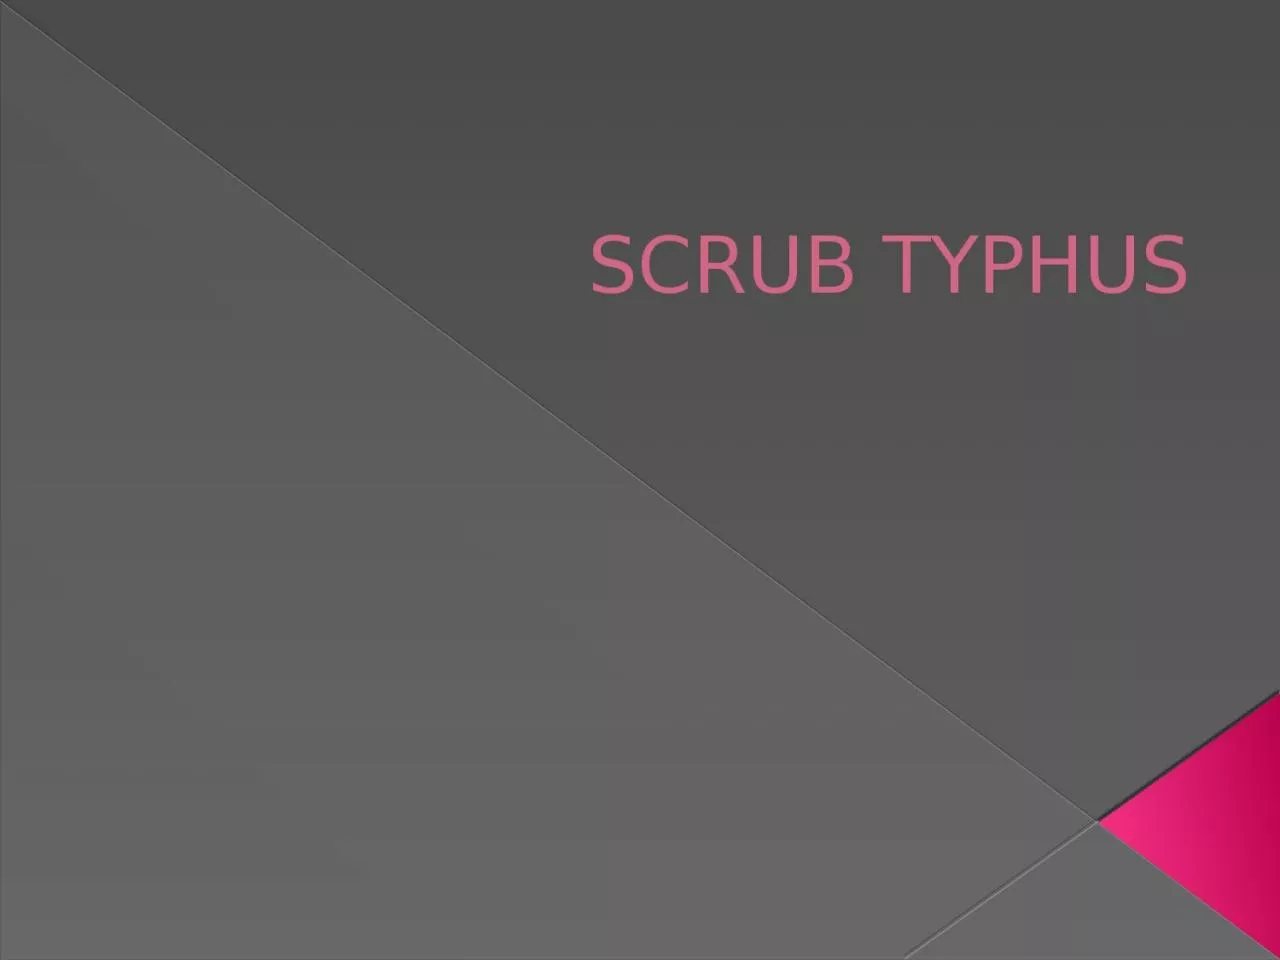 SCRUB TYPHUS Scrub typhus